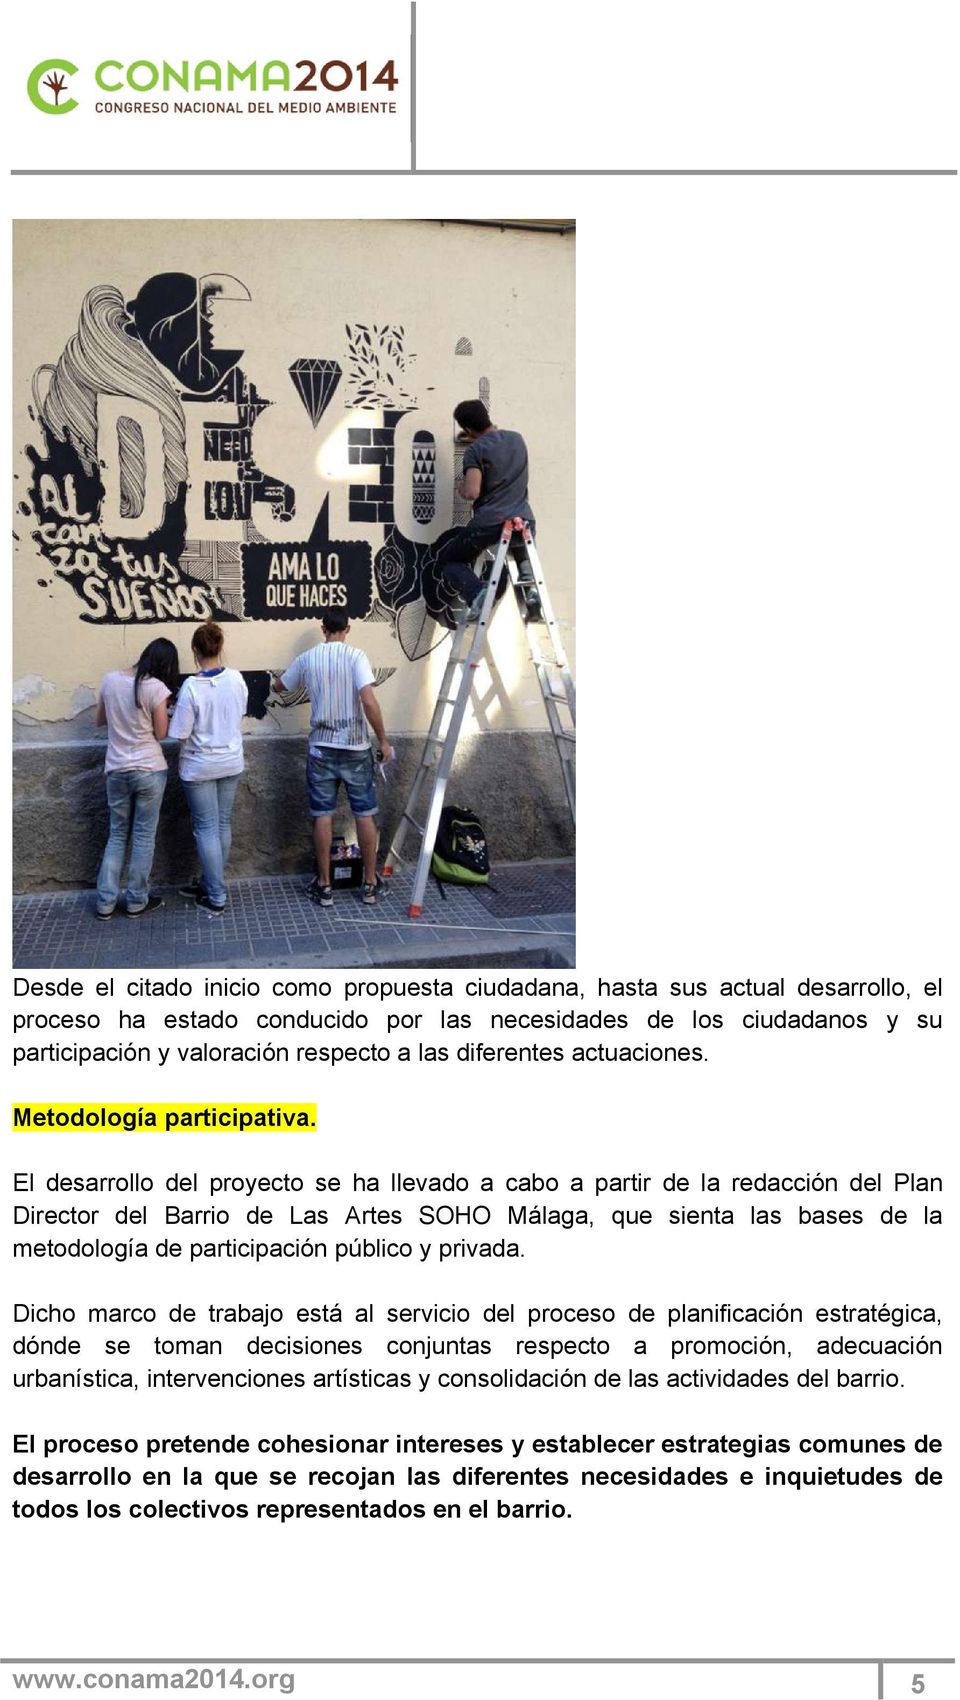 El desarrollo del proyecto se ha llevado a cabo a partir de la redacción del Plan Director del Barrio de Las Artes SOHO Málaga, que sienta las bases de la metodología de participación público y